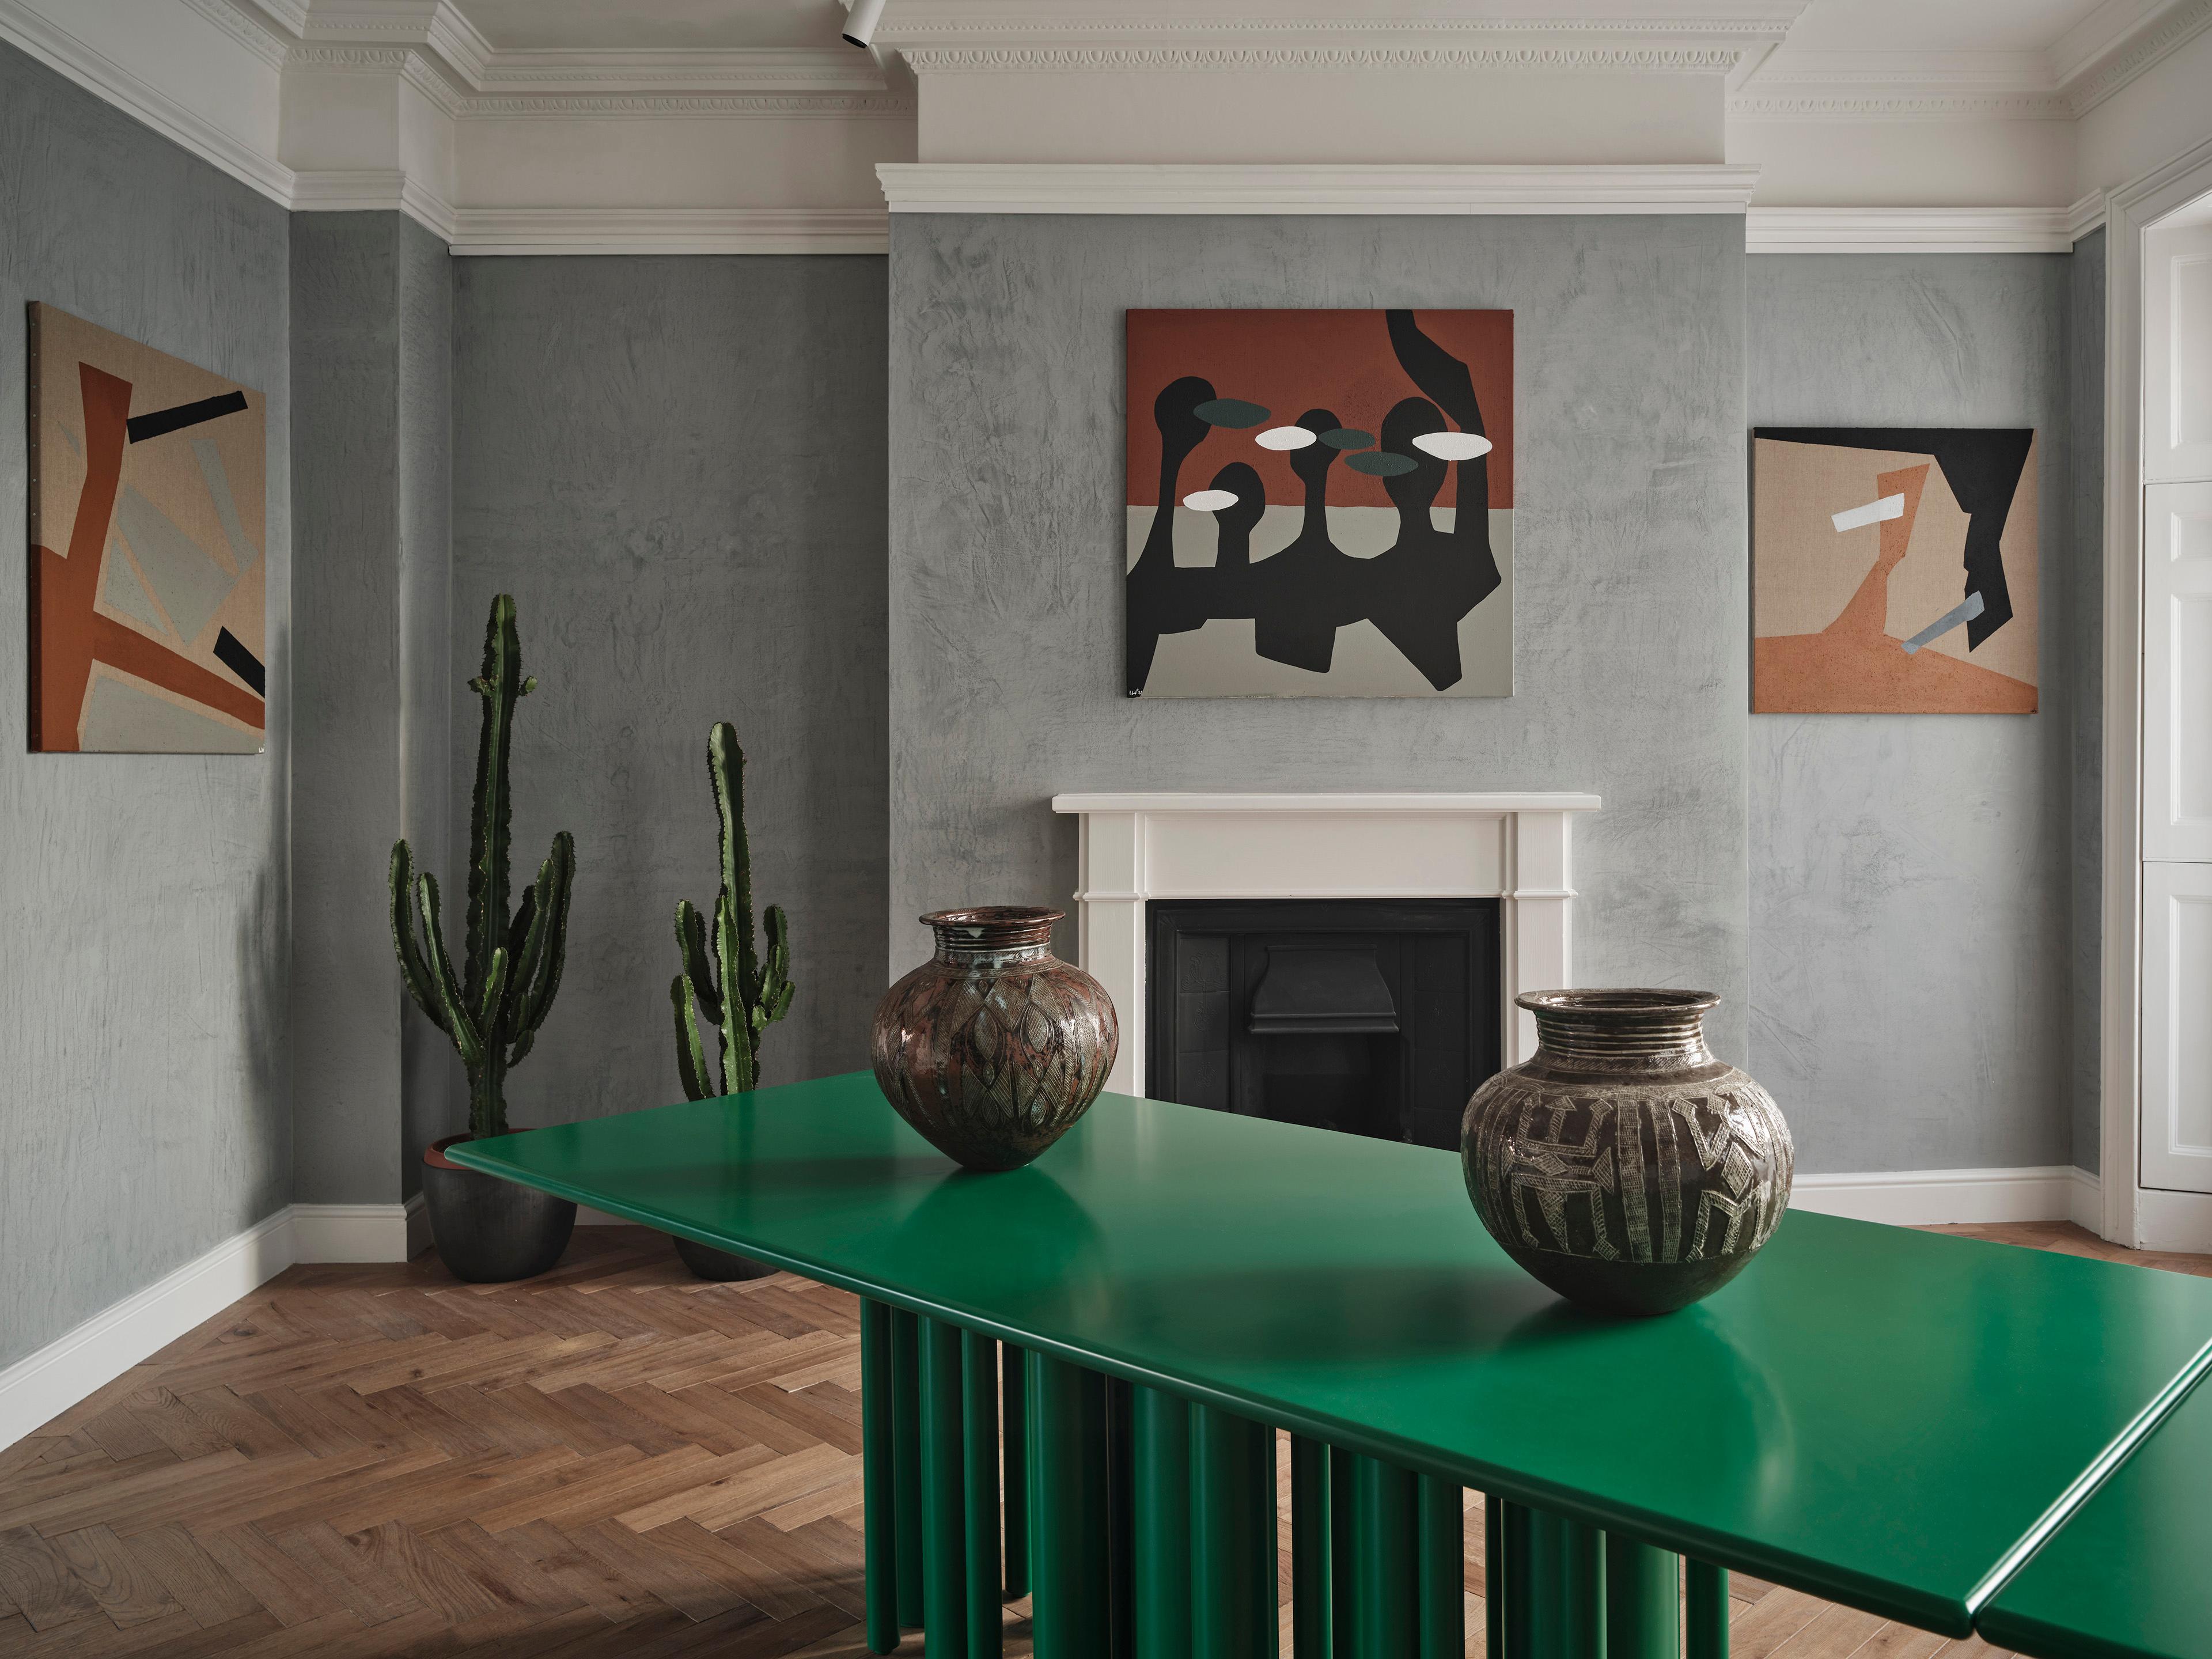 Der moderne Tisch Townhaus green für SoShiro von Interni Design Studio ist ein skulpturaler Blickfang für jedes Esszimmer, aber auch für ein Büro oder einen Konferenzraum. 

Der sattgrüne Mattlack verwandelt die Oberfläche des Tisches und versetzt